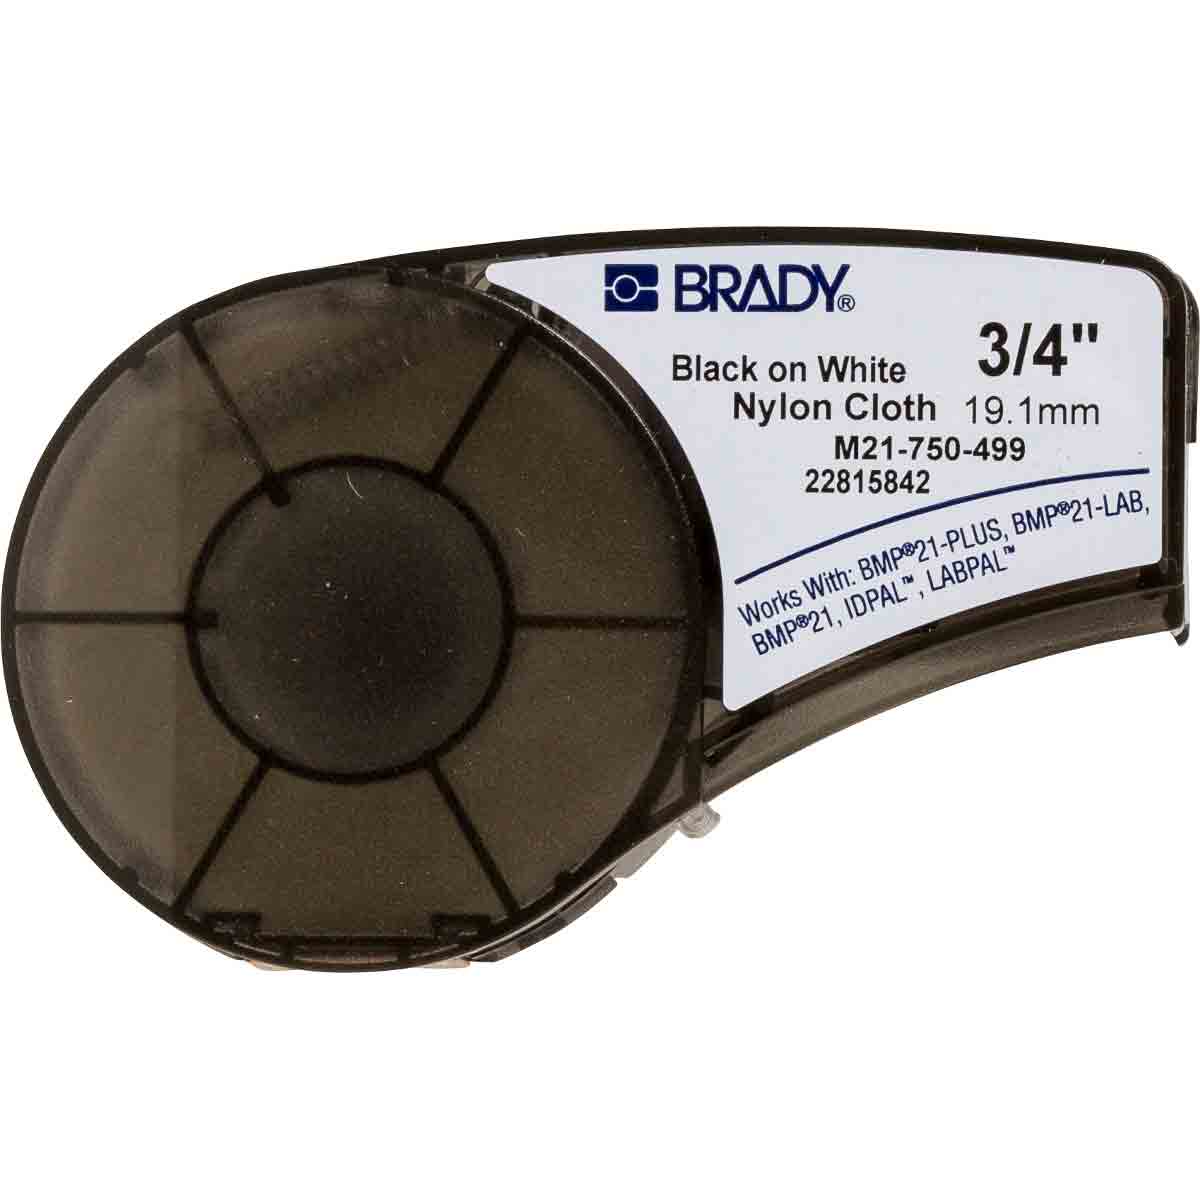 M21750499 - Nylon Labels, 0.75" X 16', BK/WH - Brady®